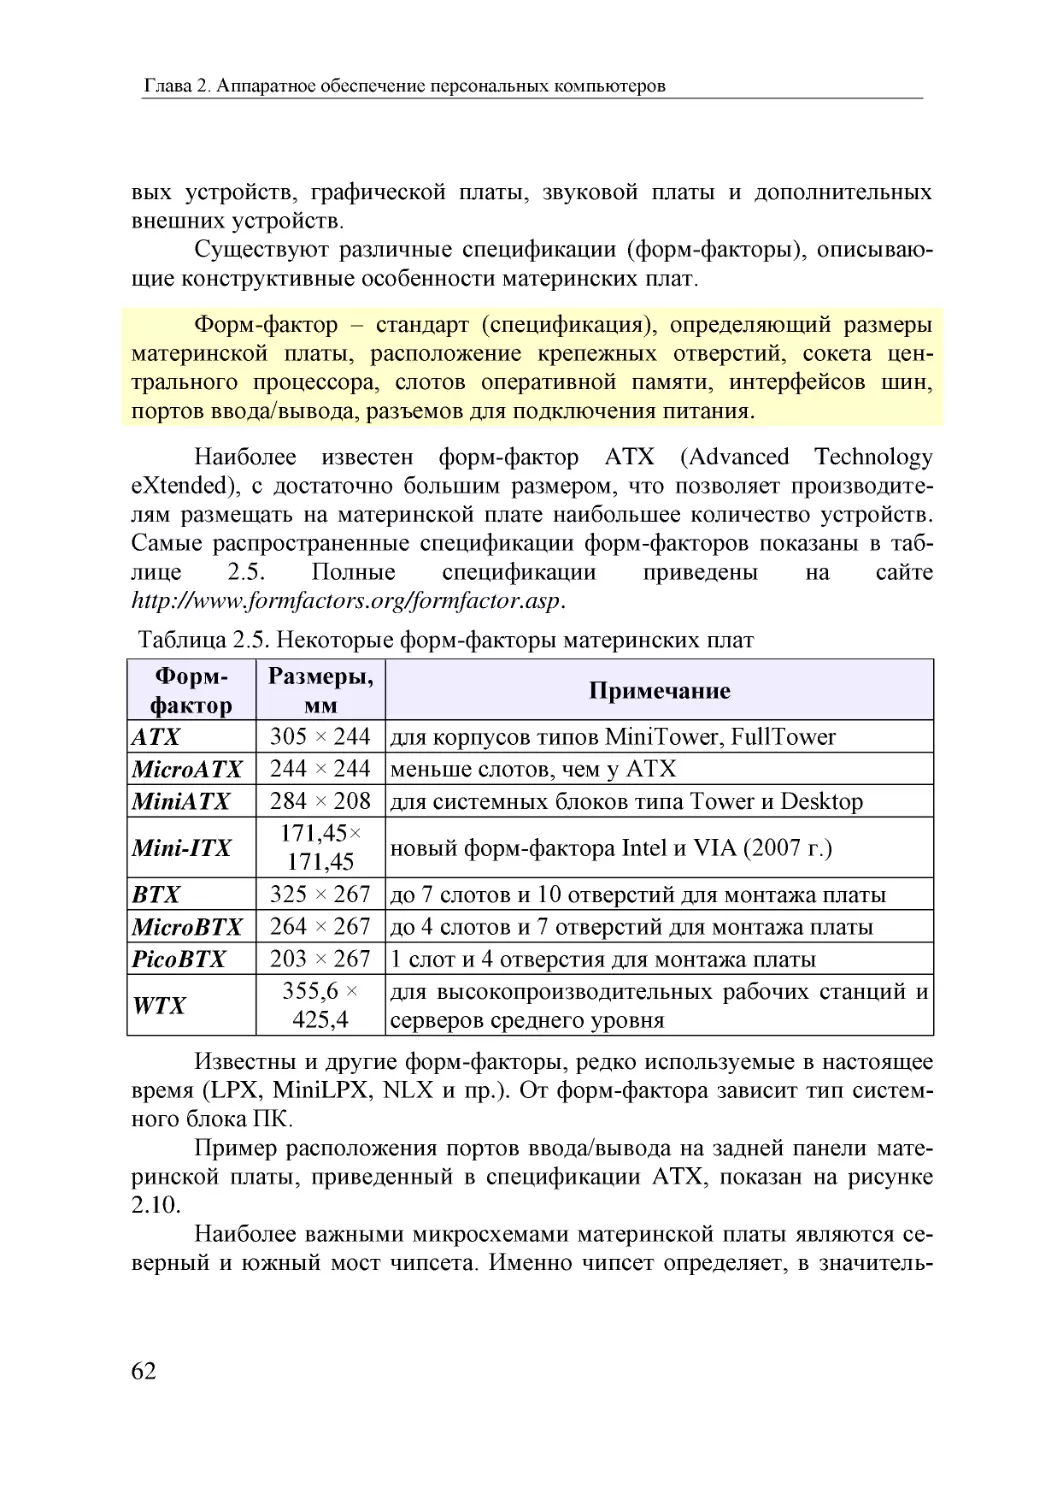 Informatika_Uchebnik_dlya_vuzov_2010 62